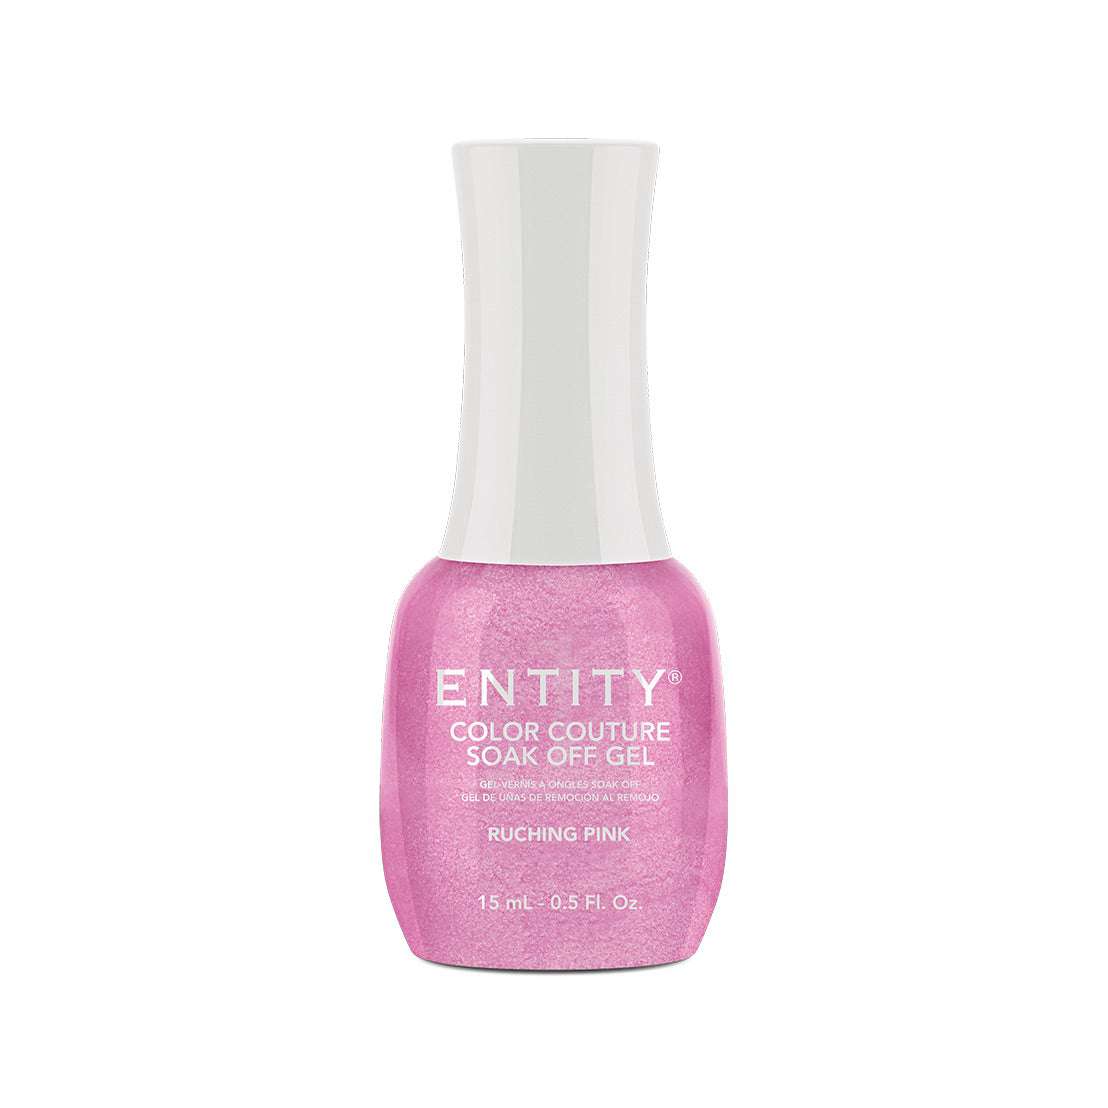 Entity Gel Soak Off - Ruching Pink 15 mL/0.5 Fl. Oz